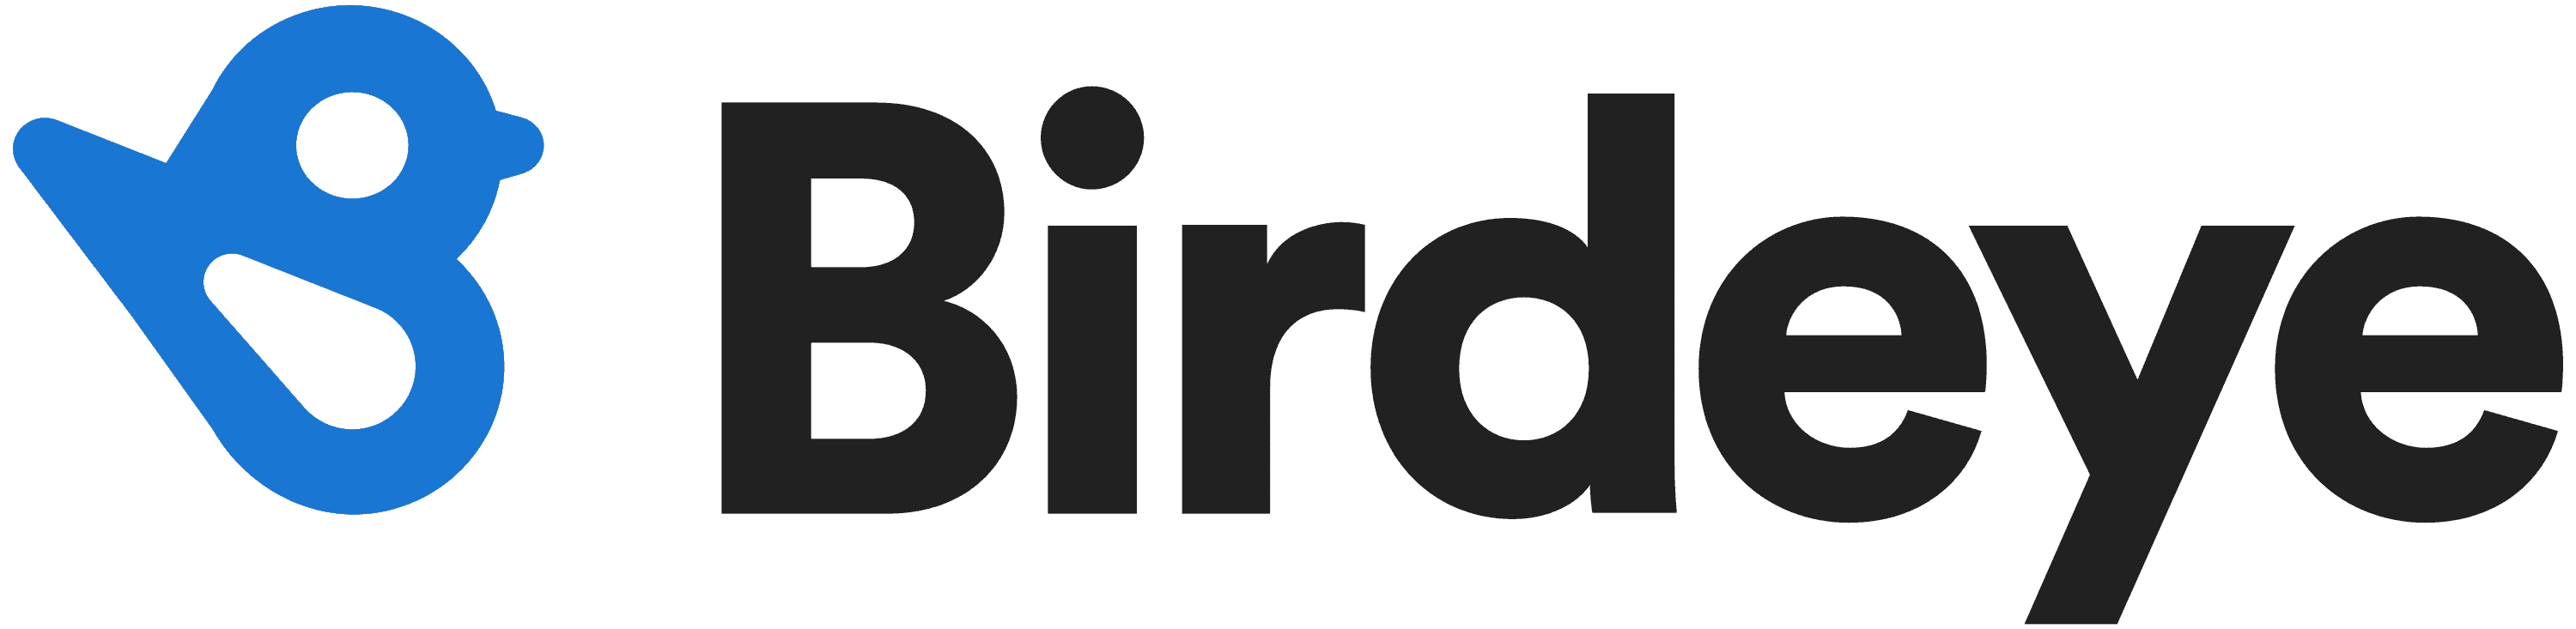 Birdeye